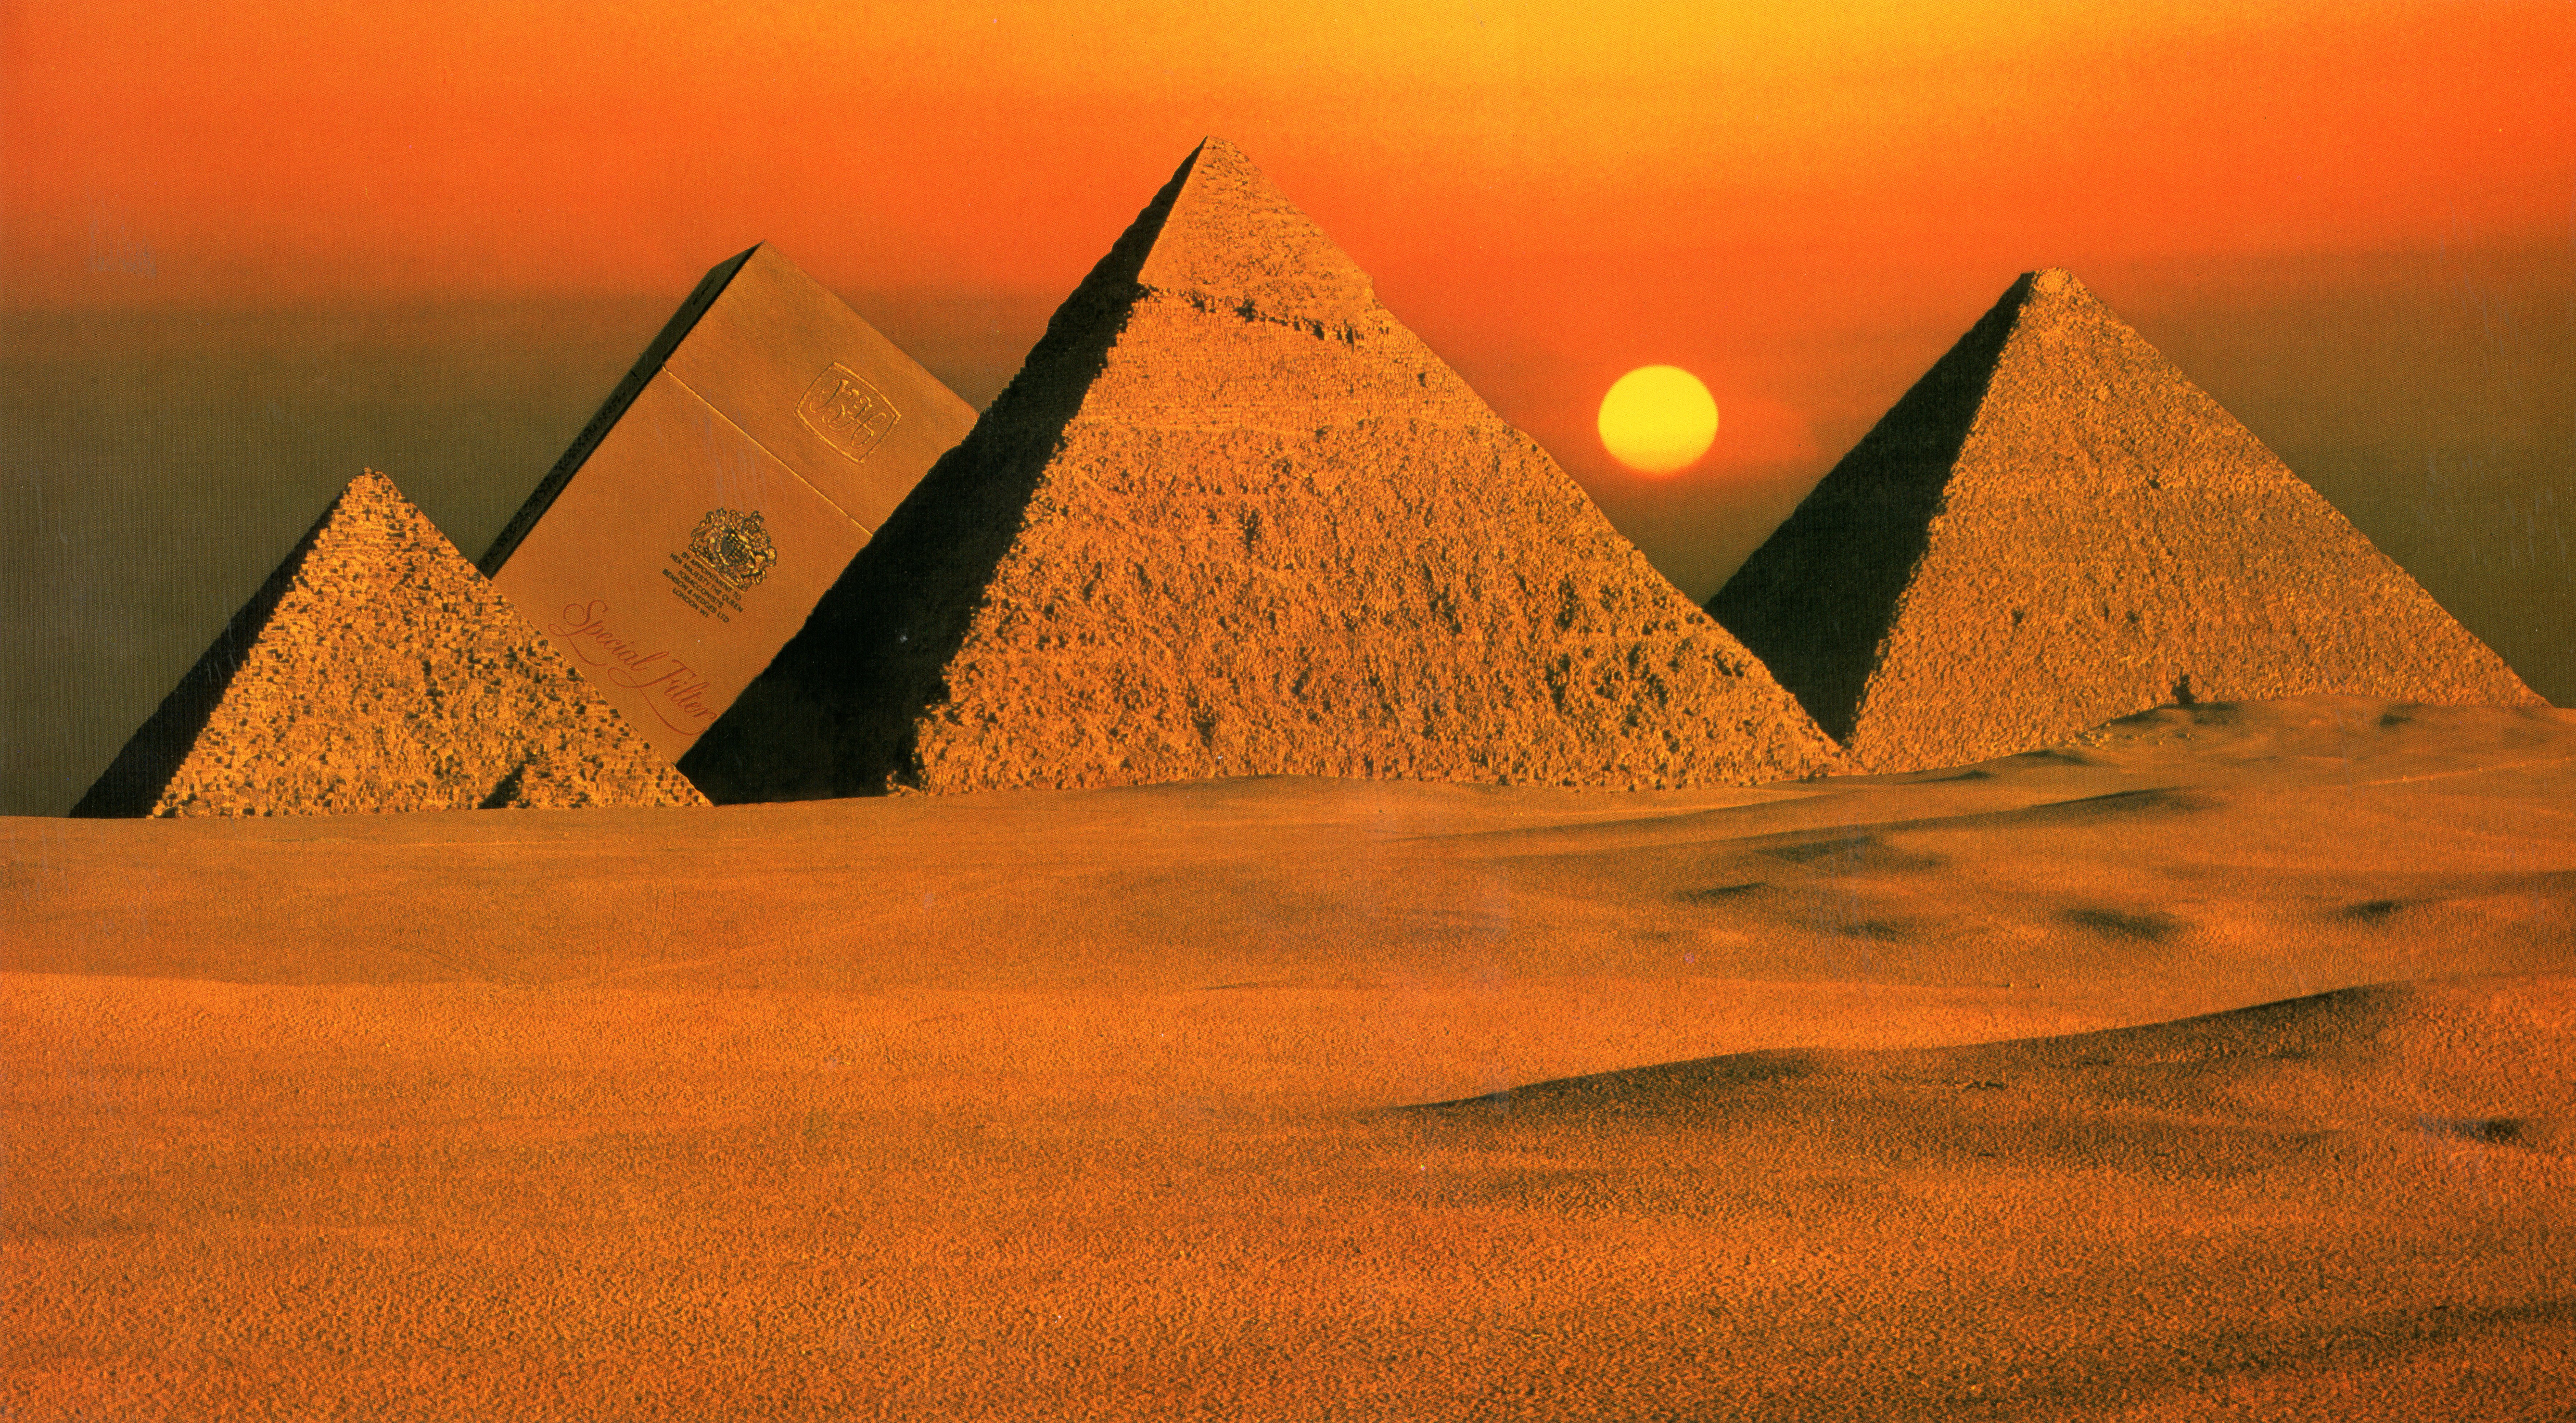 B&H Surreal 'Pyramids'-01